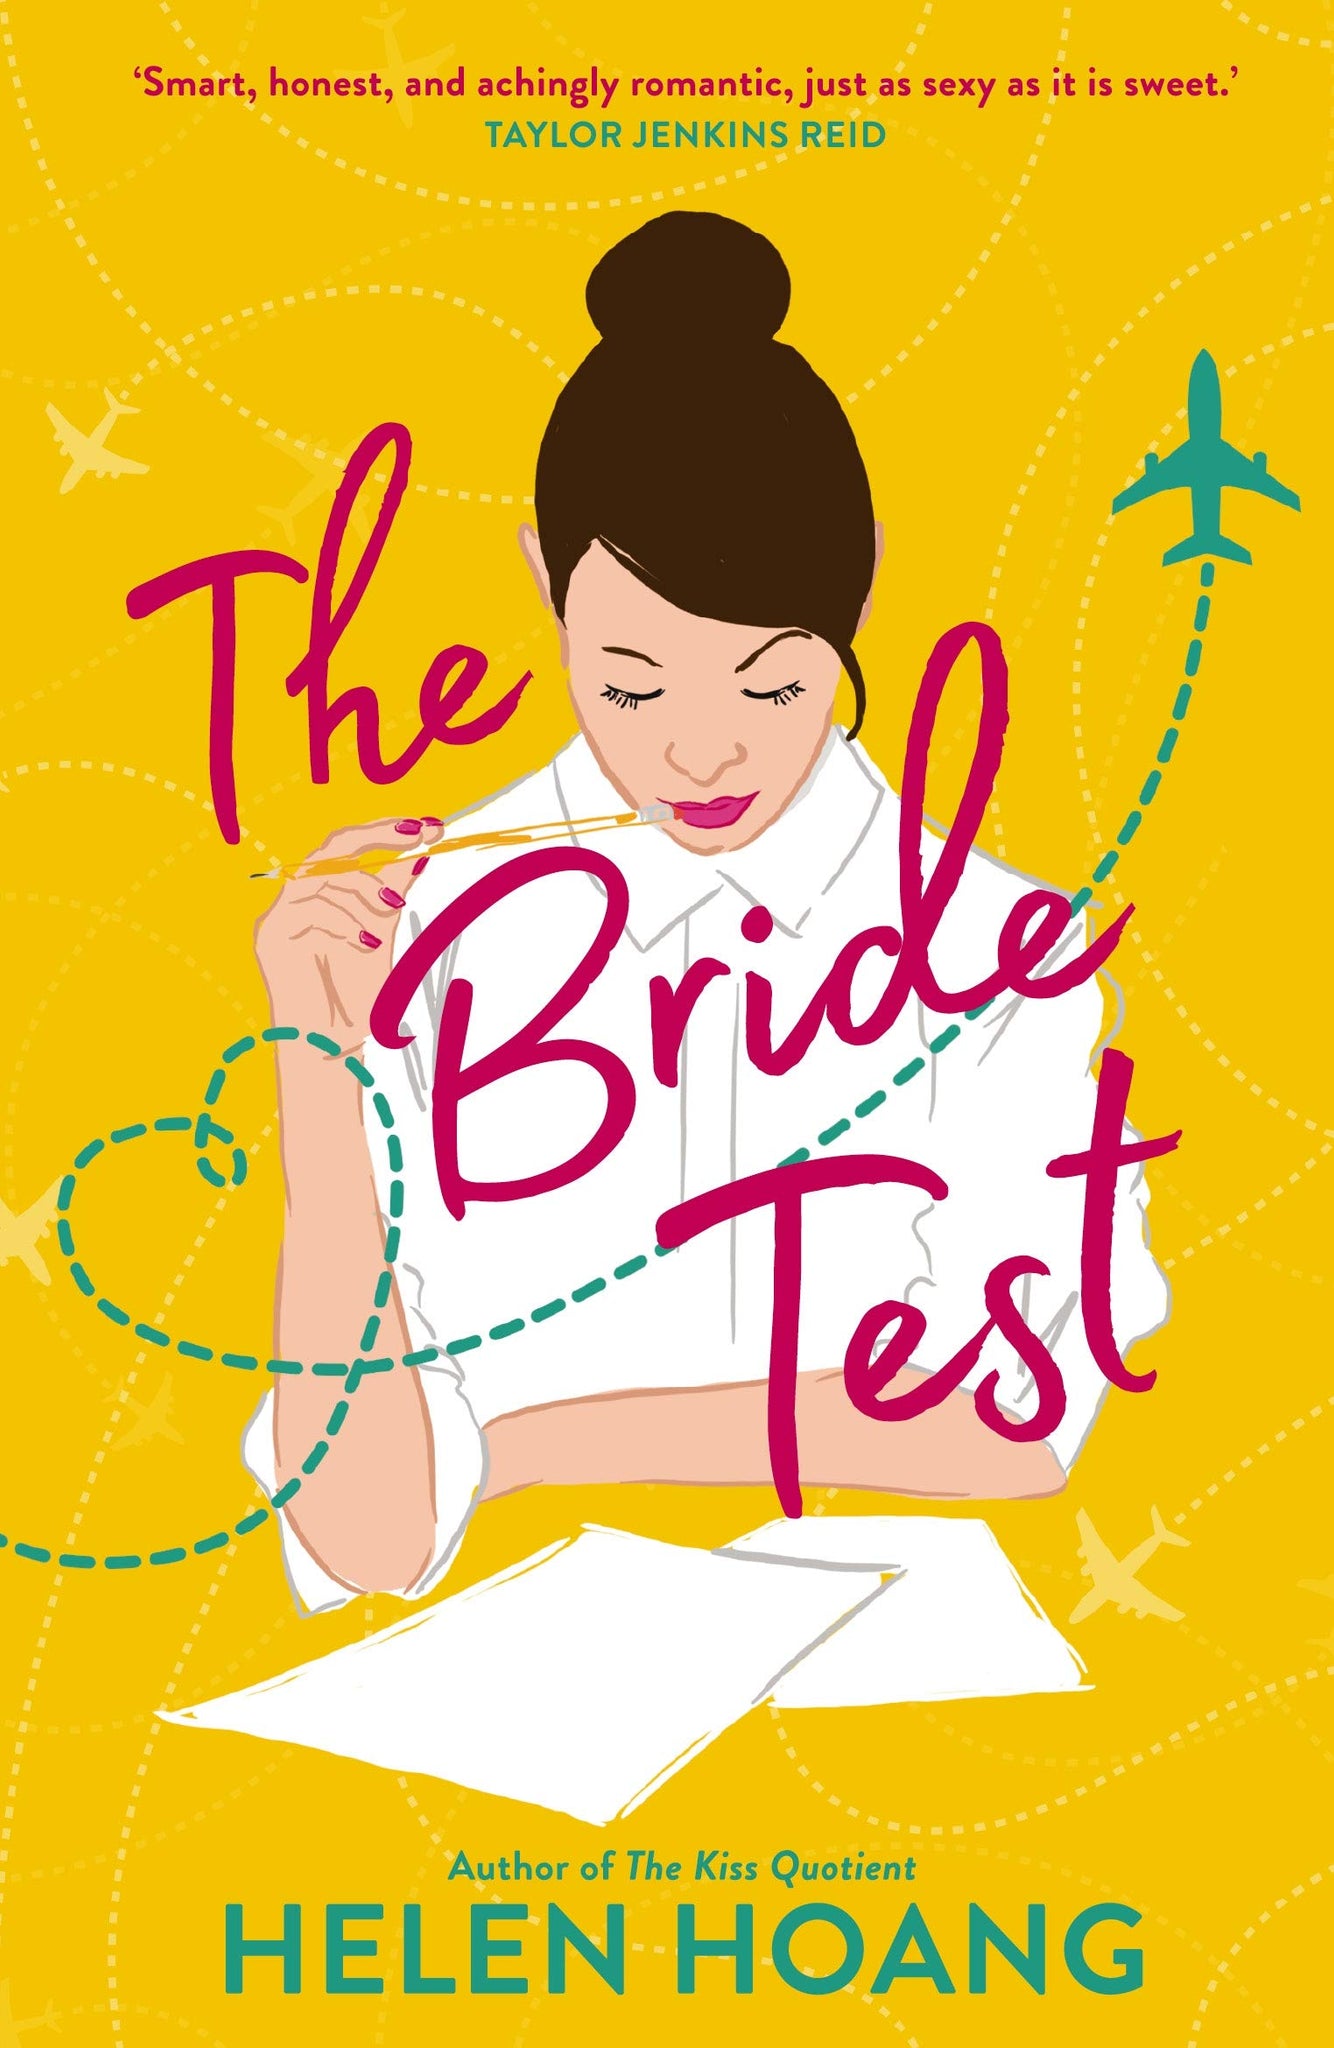 The Kiss Quotient #2 : The Bride Test - Paperback